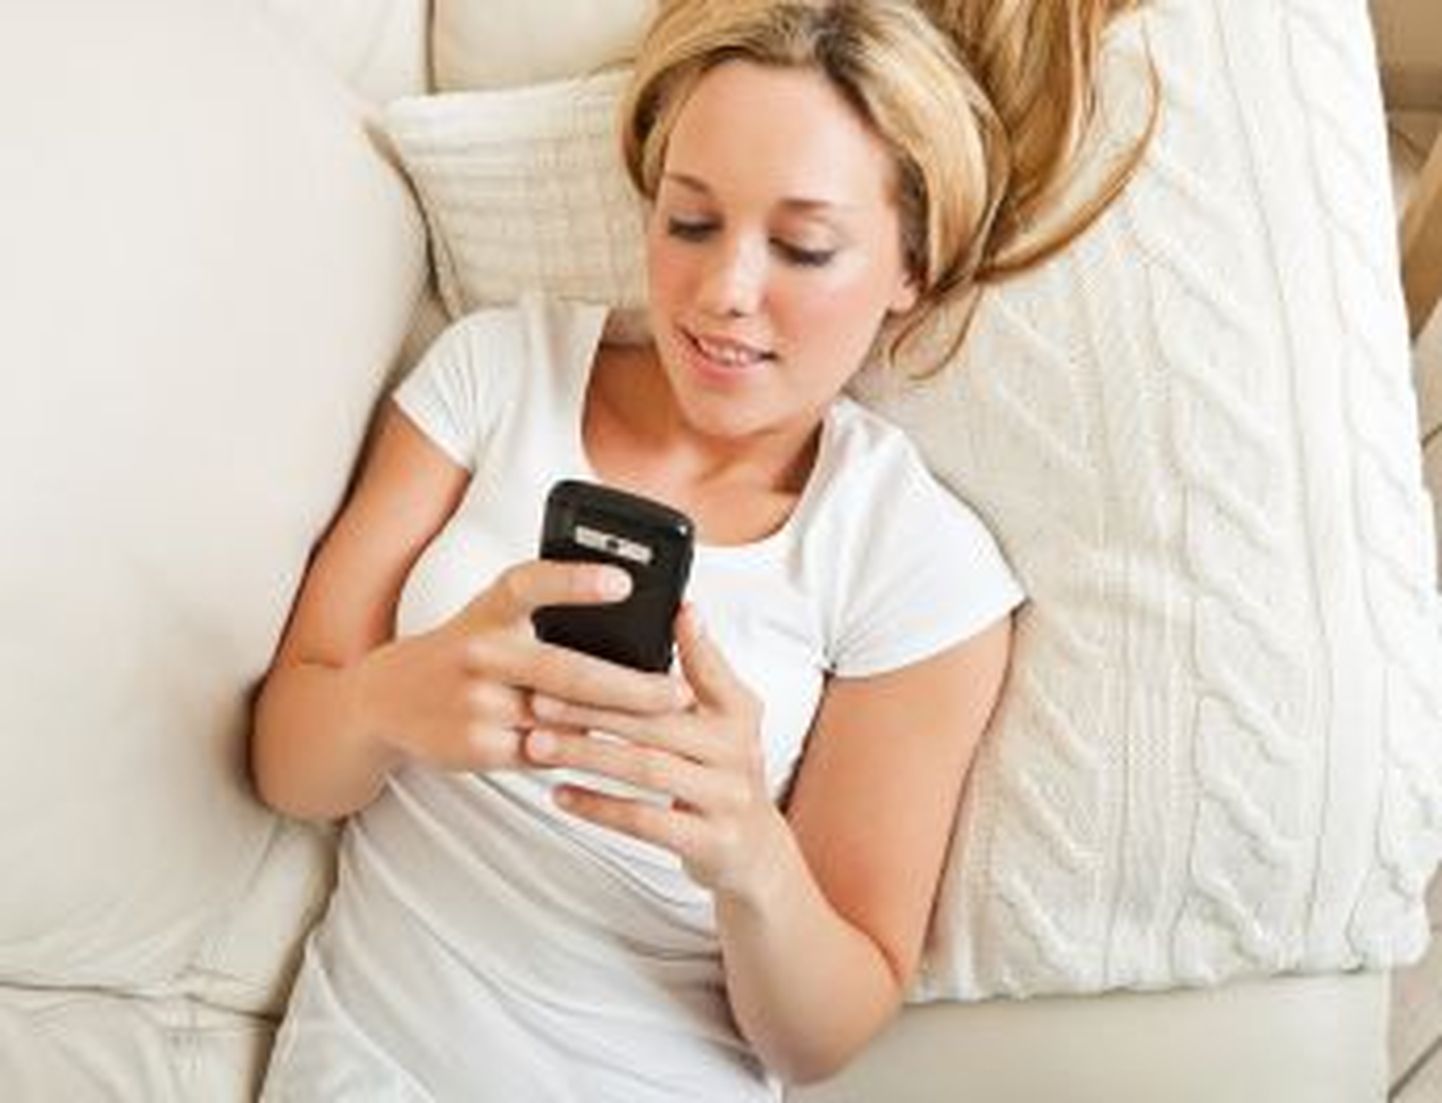 Uus fenomen: inimesed saadavad magades sõnumeid